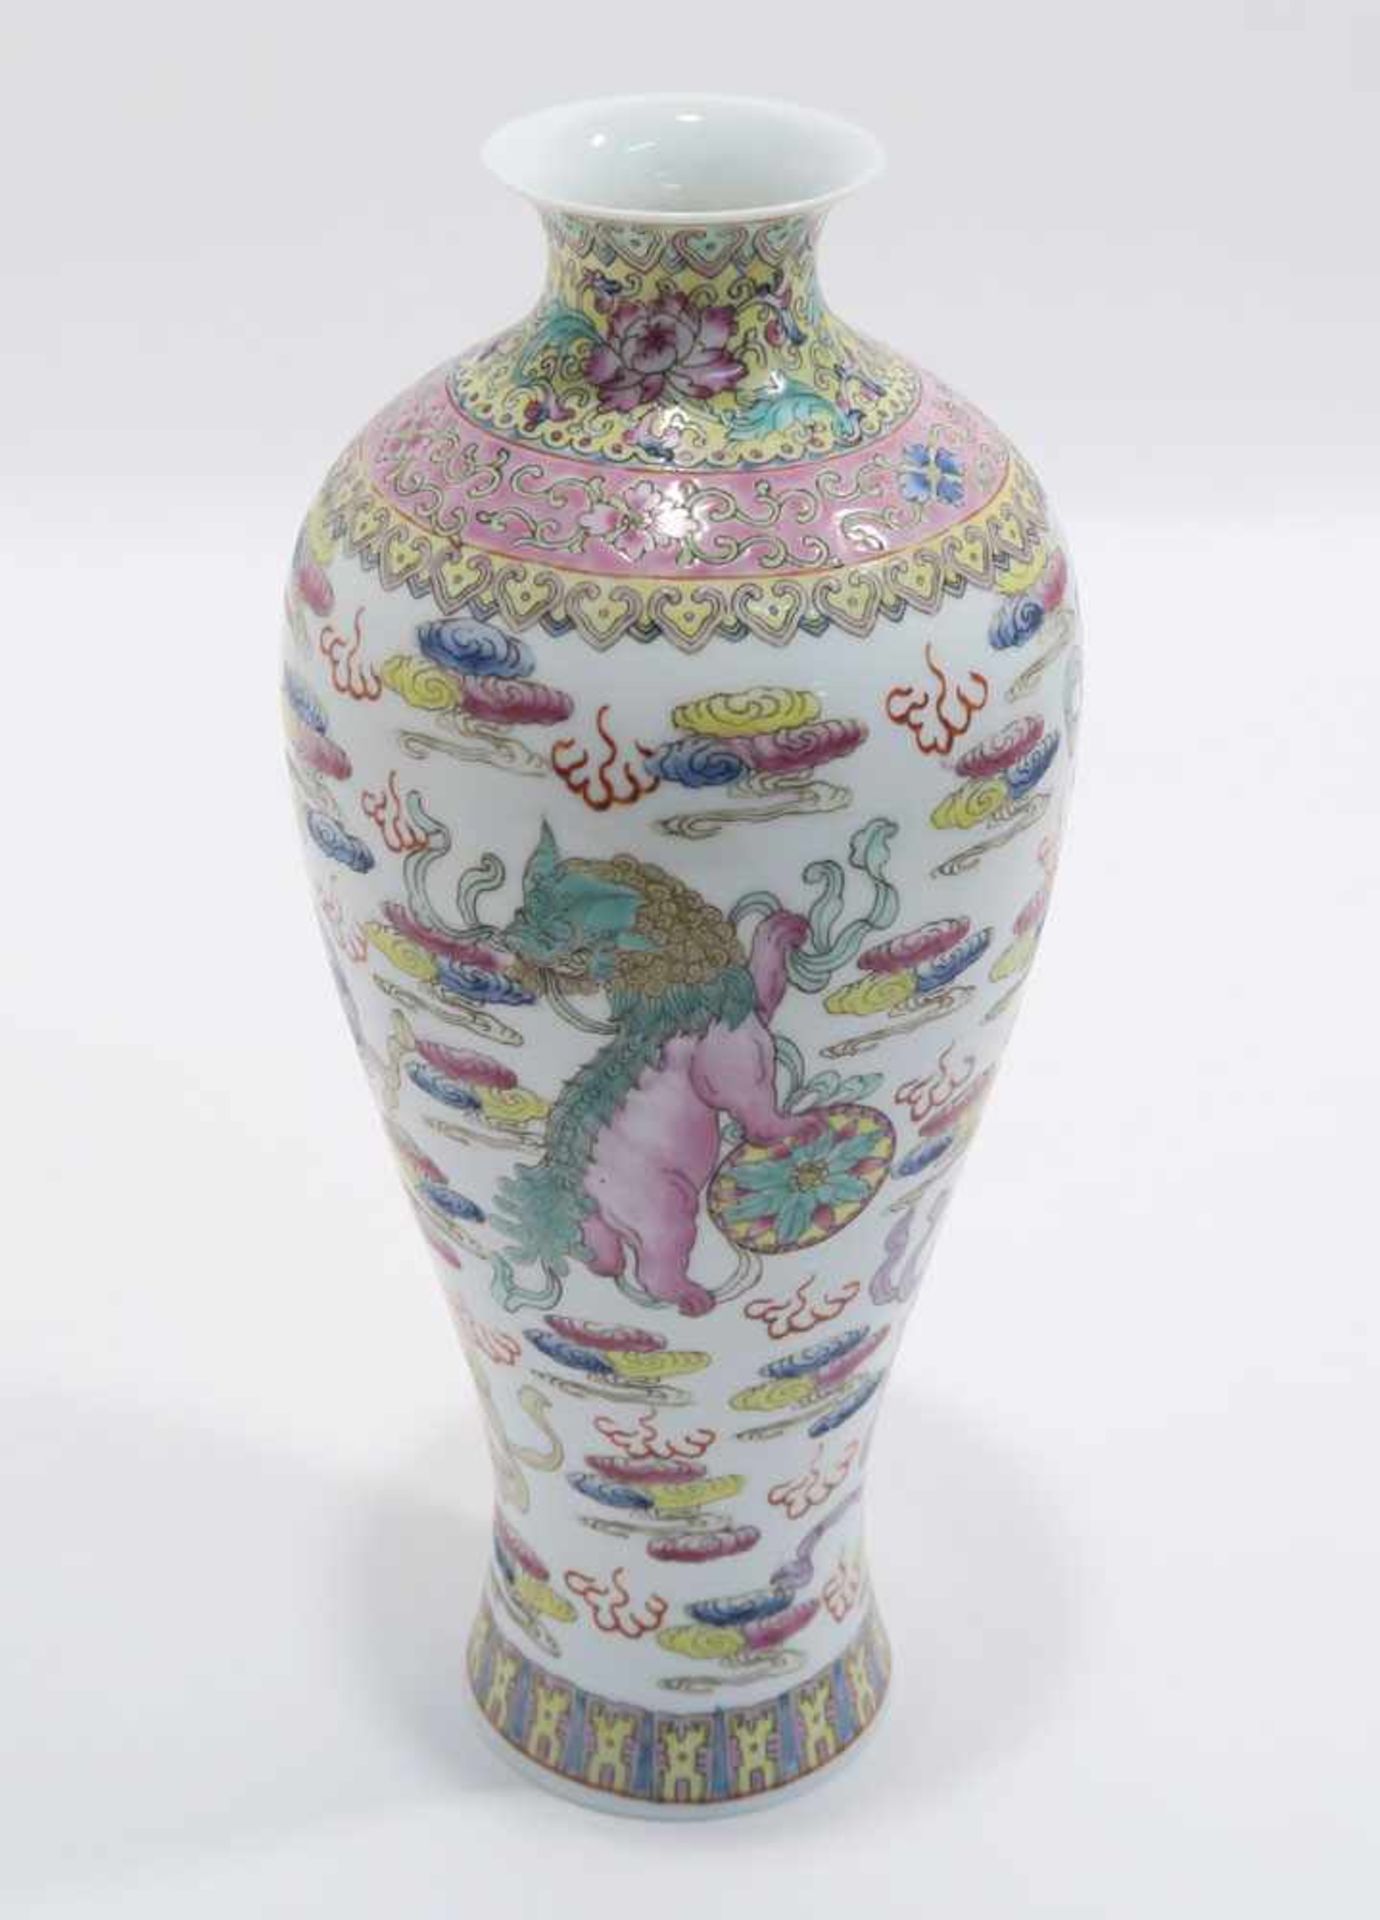 Opiumpfeife / Vase / DeckelgefäßChina. Porzellan, tlw. mit Kupfermontierung. Verschiedene bunte bzw. - Bild 18 aus 21